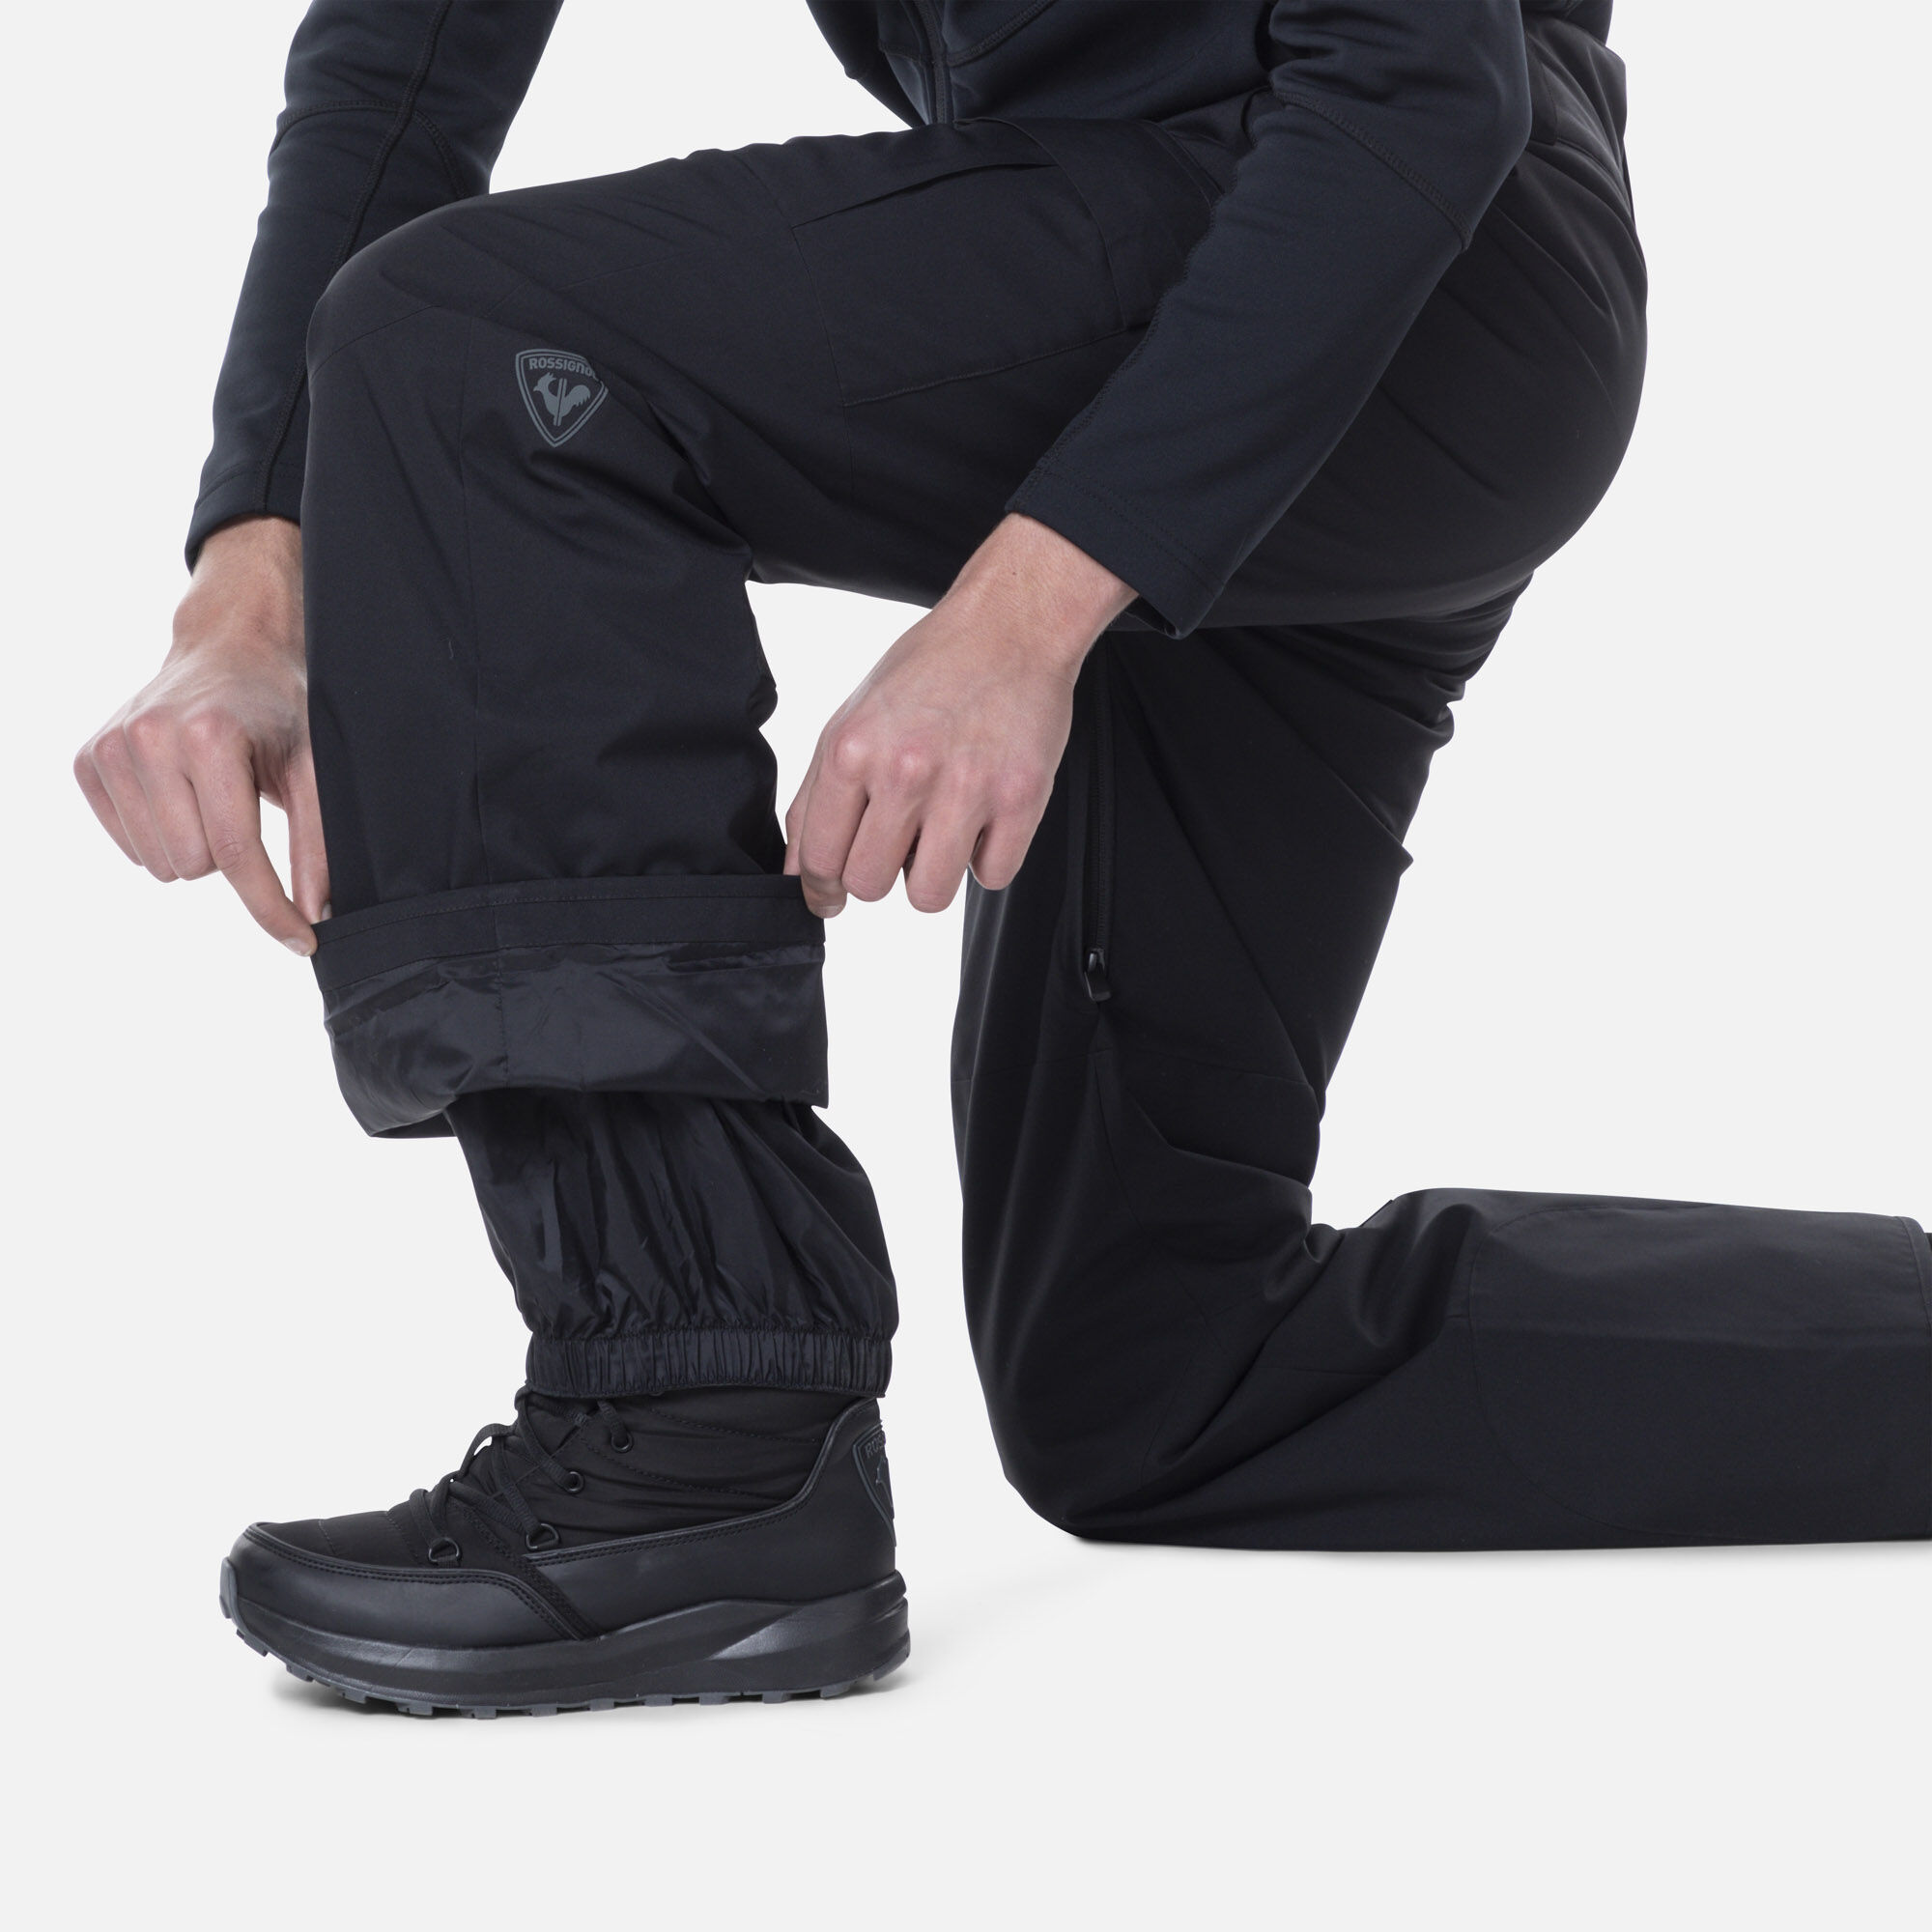 Spyder Men's Traction Pants for Sale - Ski Shack - Ski Shack